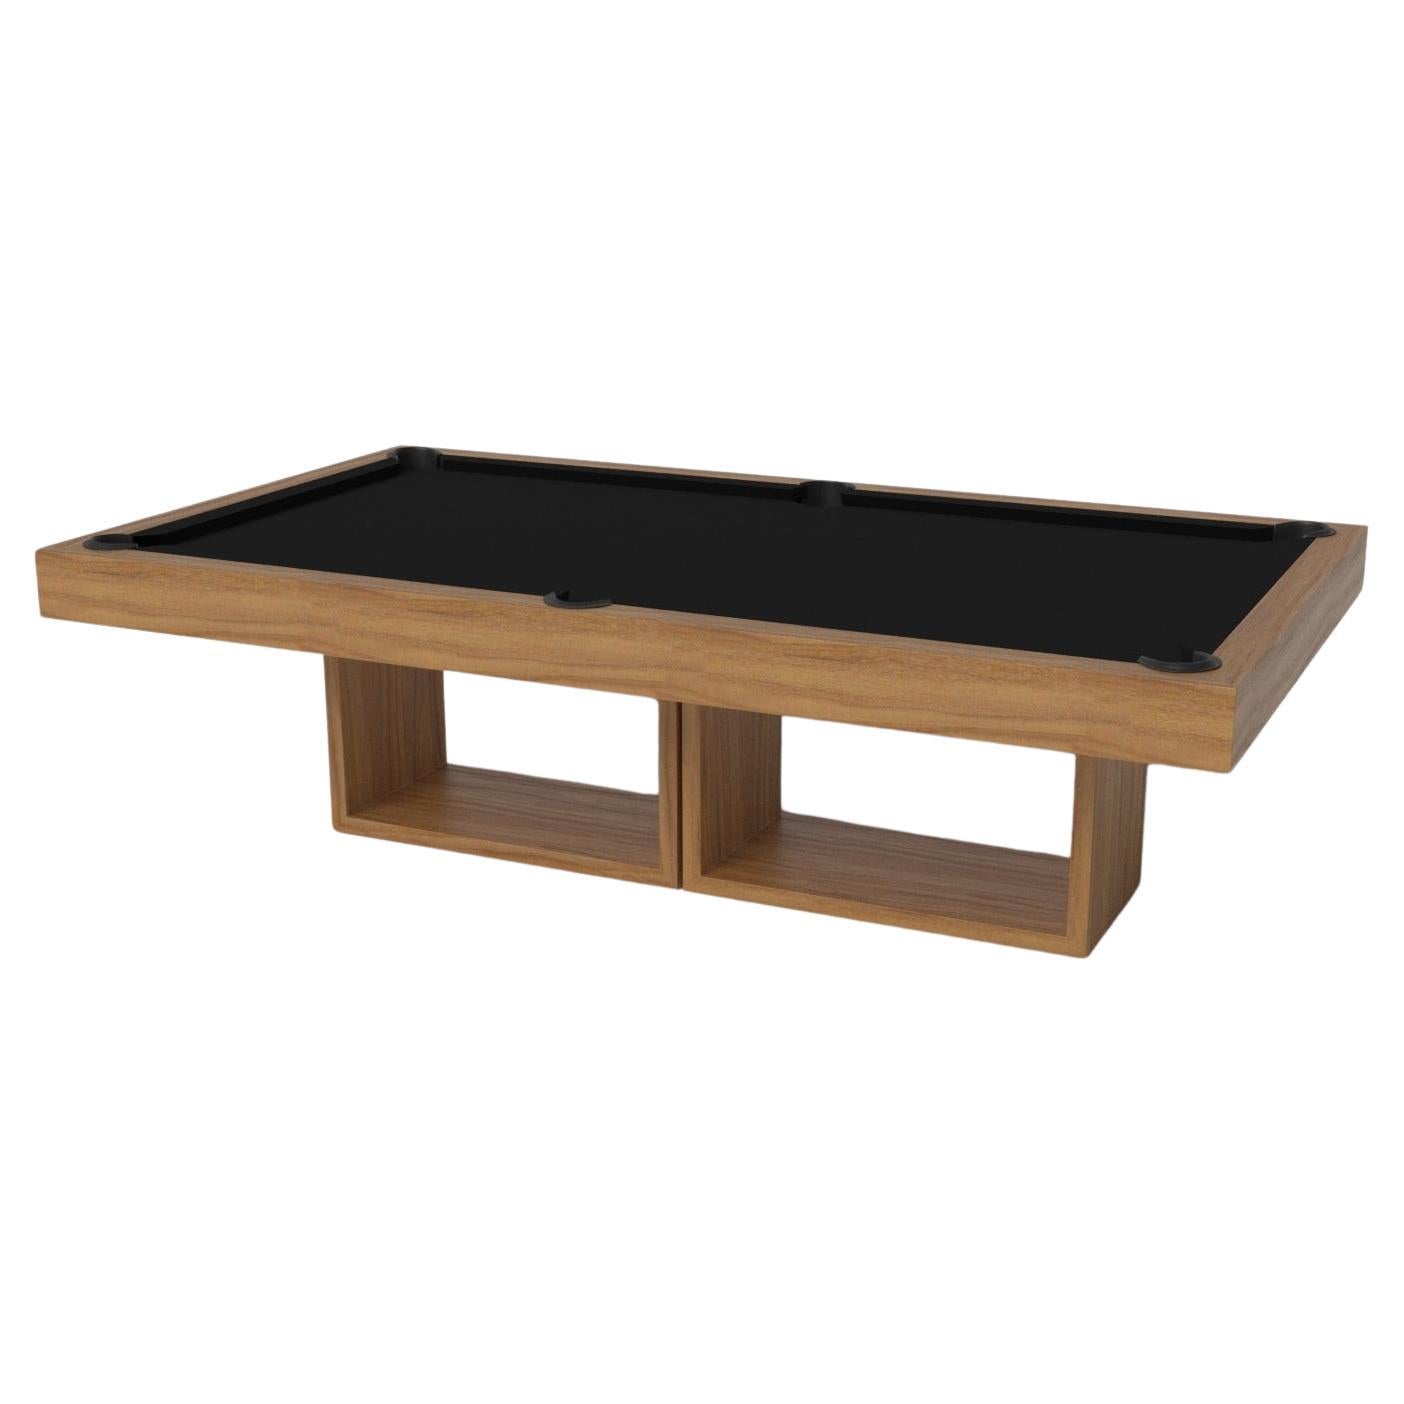 Table de piscine Ambrosia sur mesure en bois de teck massif de 9', fabriqué aux États-Unis